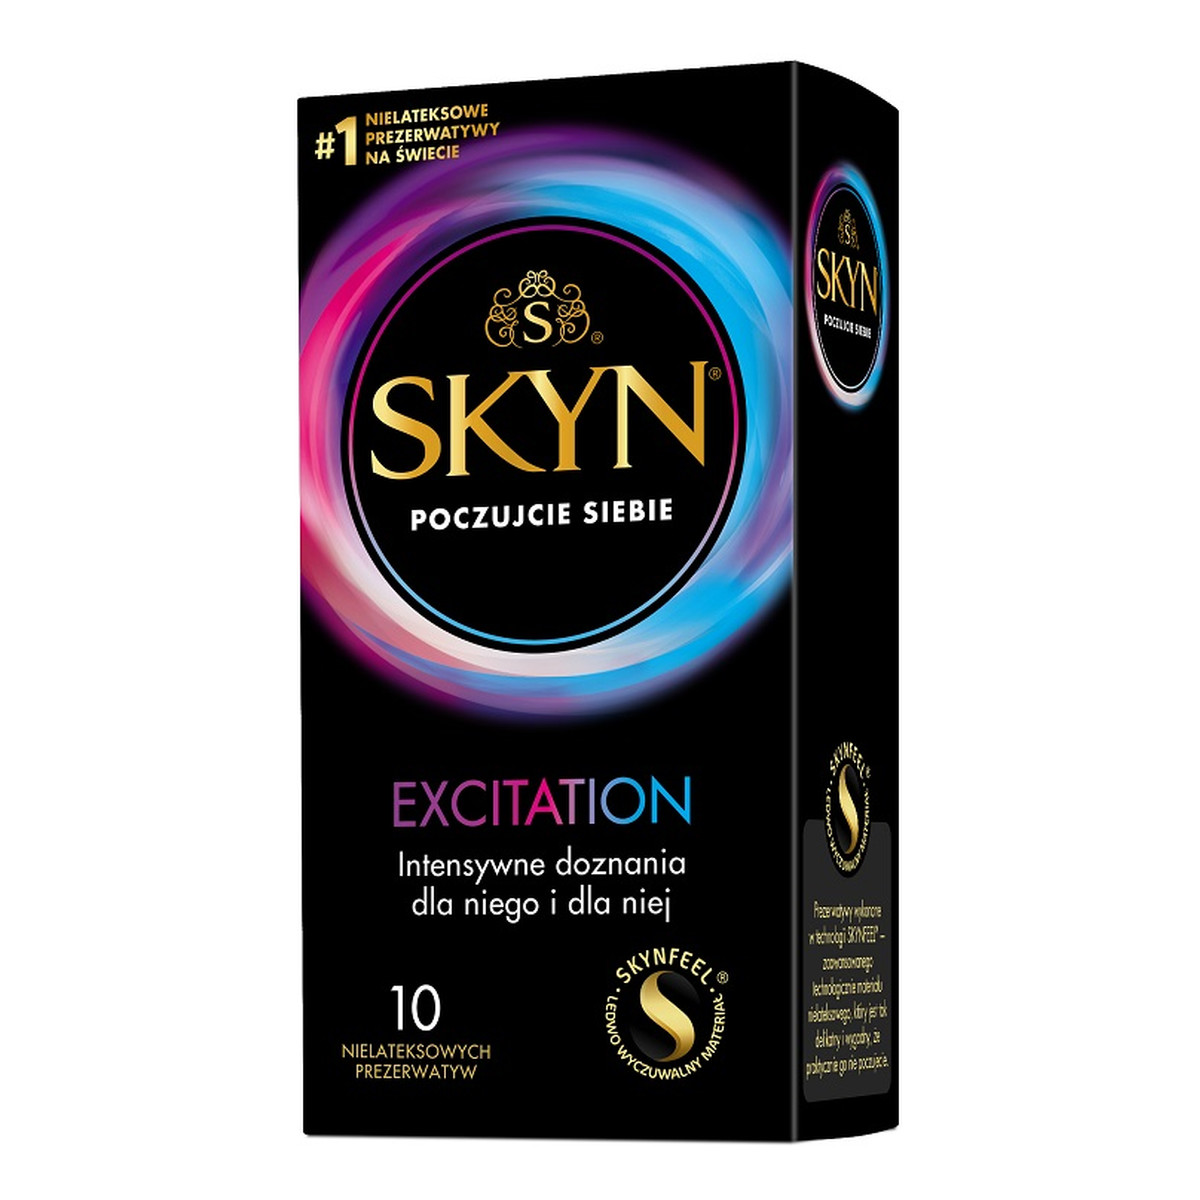 Unimil Skyn excitation nielateksowe prezerwatywy 10szt